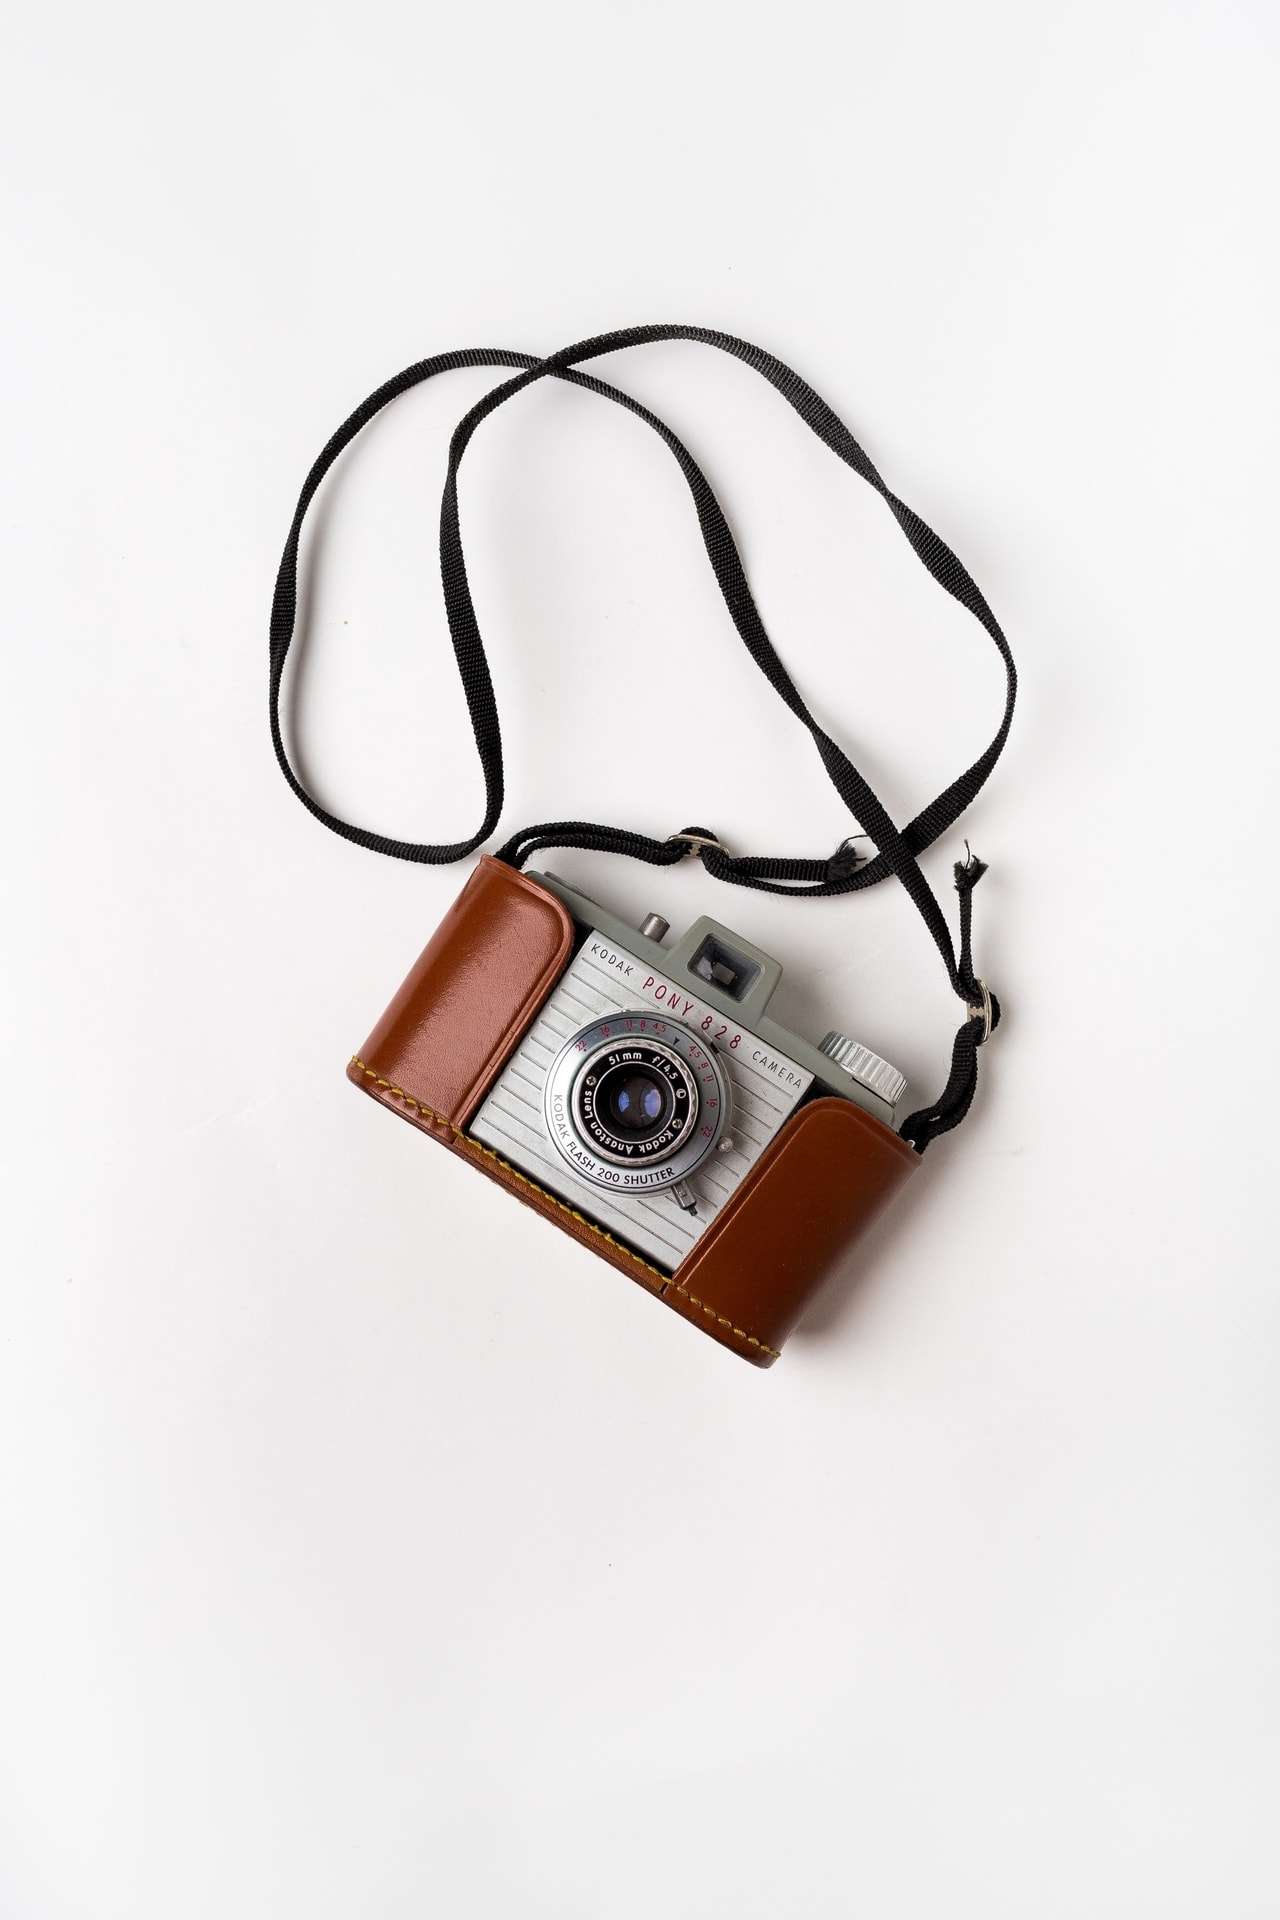 Vintage kodak fényképezőgép bőr köpeny és szíj